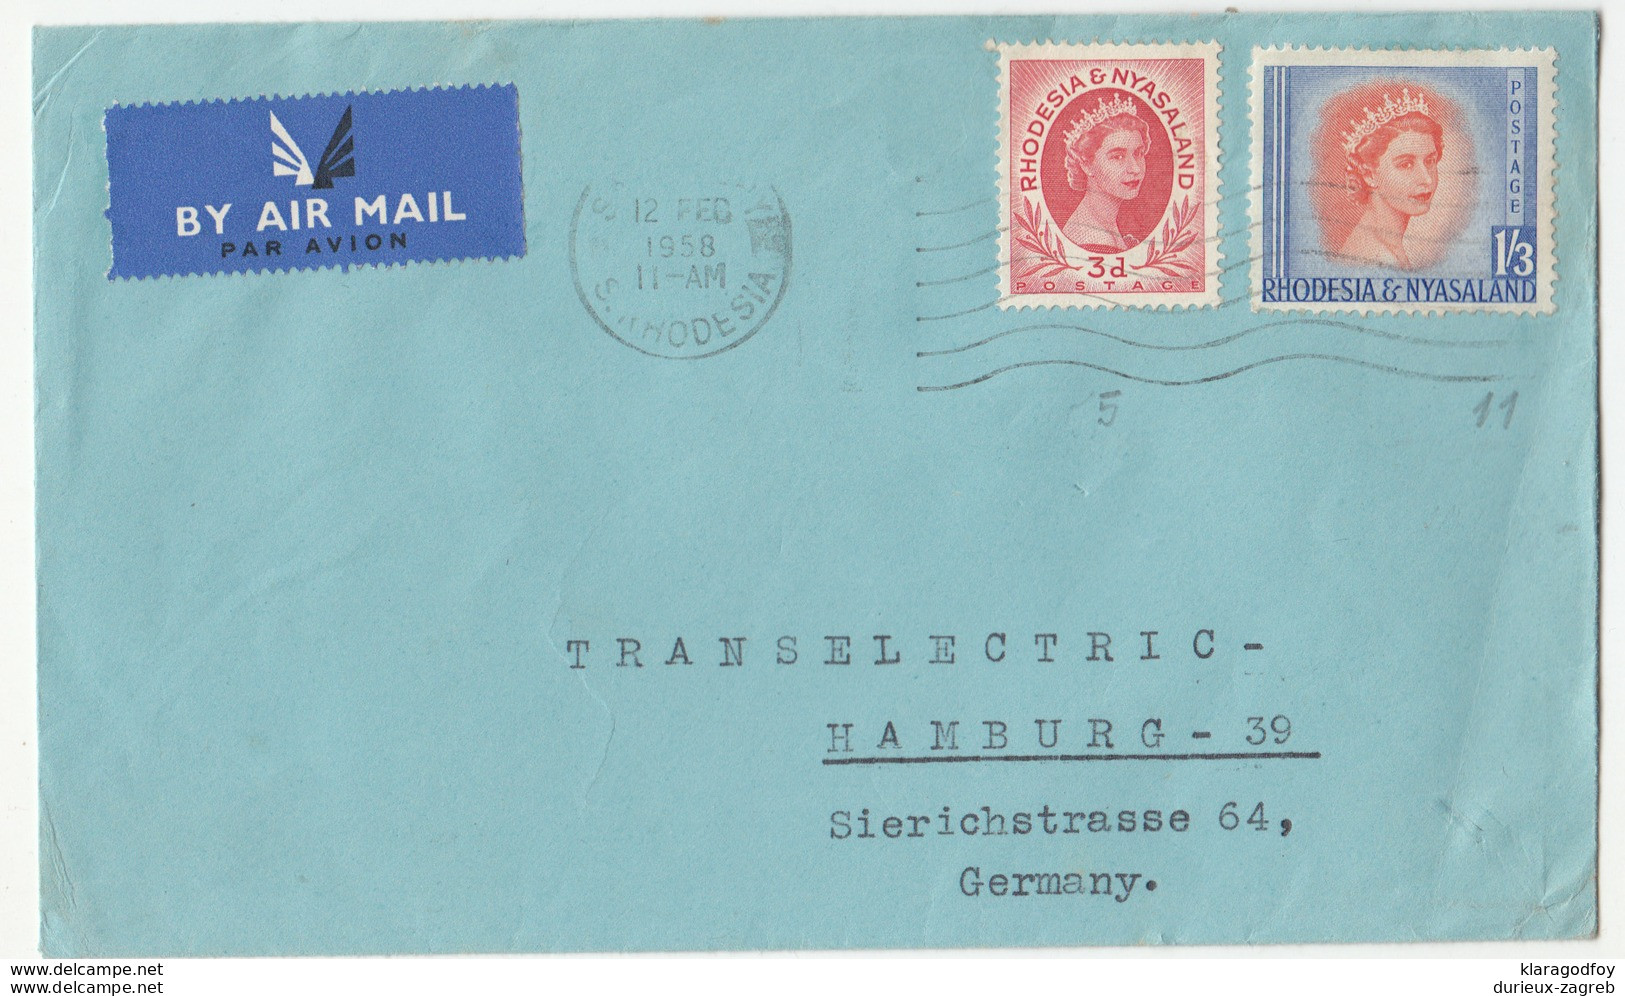 Rhodesia & Nyasaland, Letter Cover Airmail Travelled 1958 B180122 - Rhodesië & Nyasaland (1954-1963)